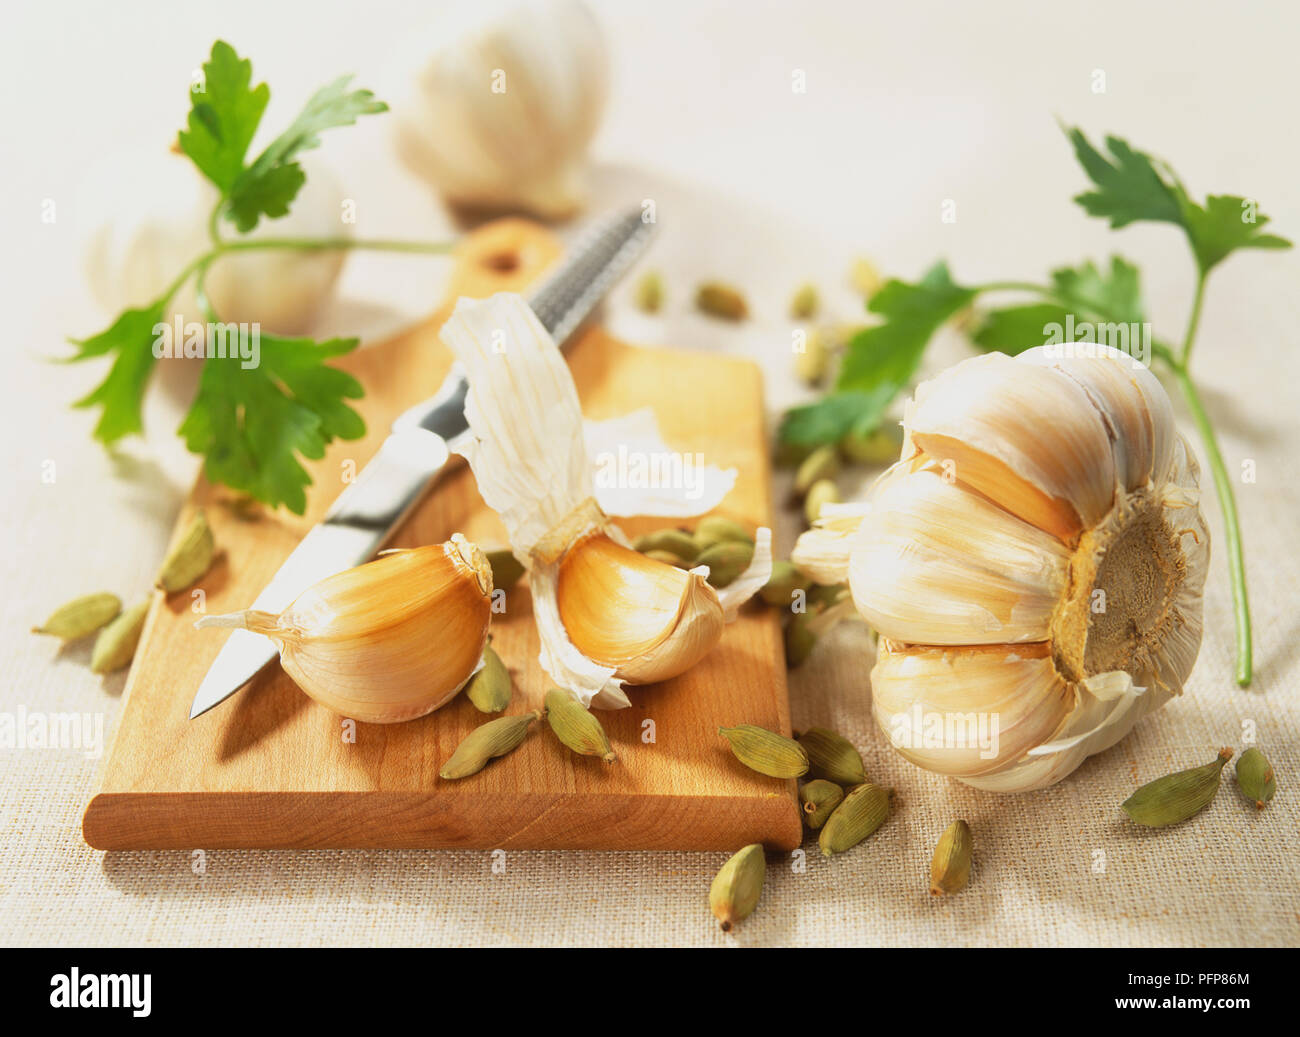 Allium sativum, aglio, capi e chiodi di garofano, Elettaria cardamomum, cardamomo, baccelli sul tagliere di legno con il reticolo coltello, concentrarsi sul primo piano. Foto Stock